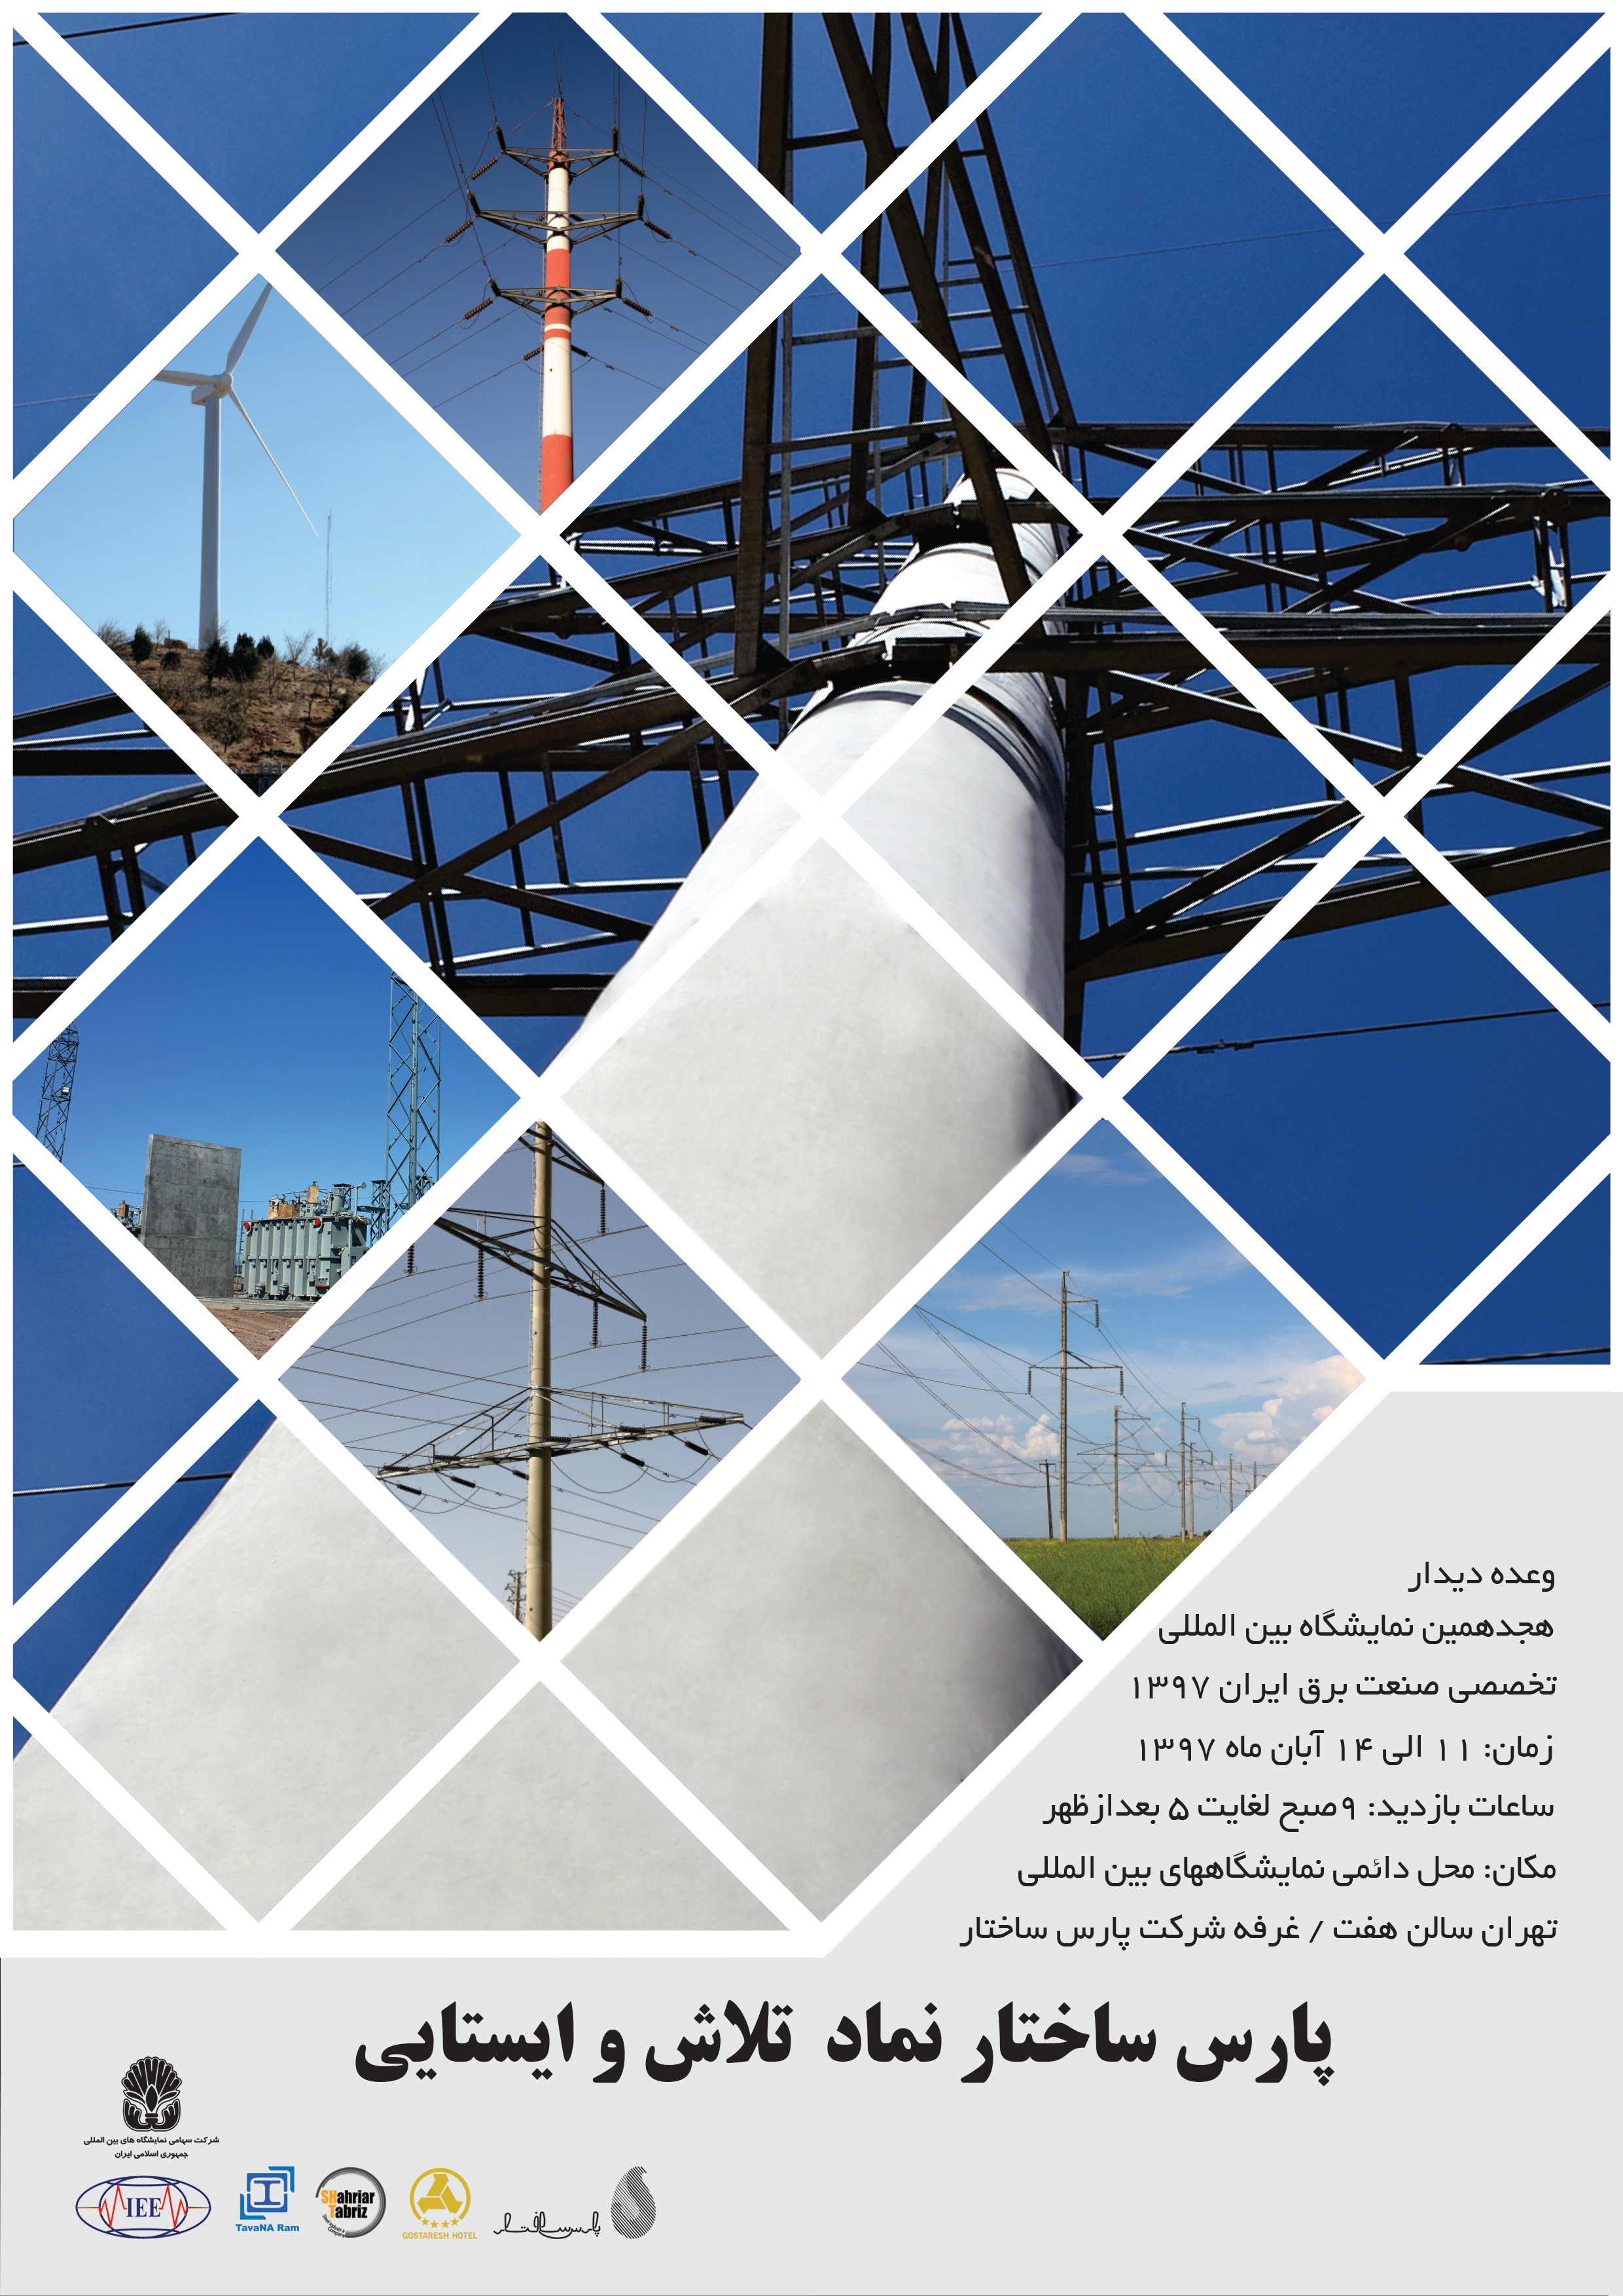 حضور شرکت پارس ساختار در هجدهمین نمایشگاه بین المللی برق تهران